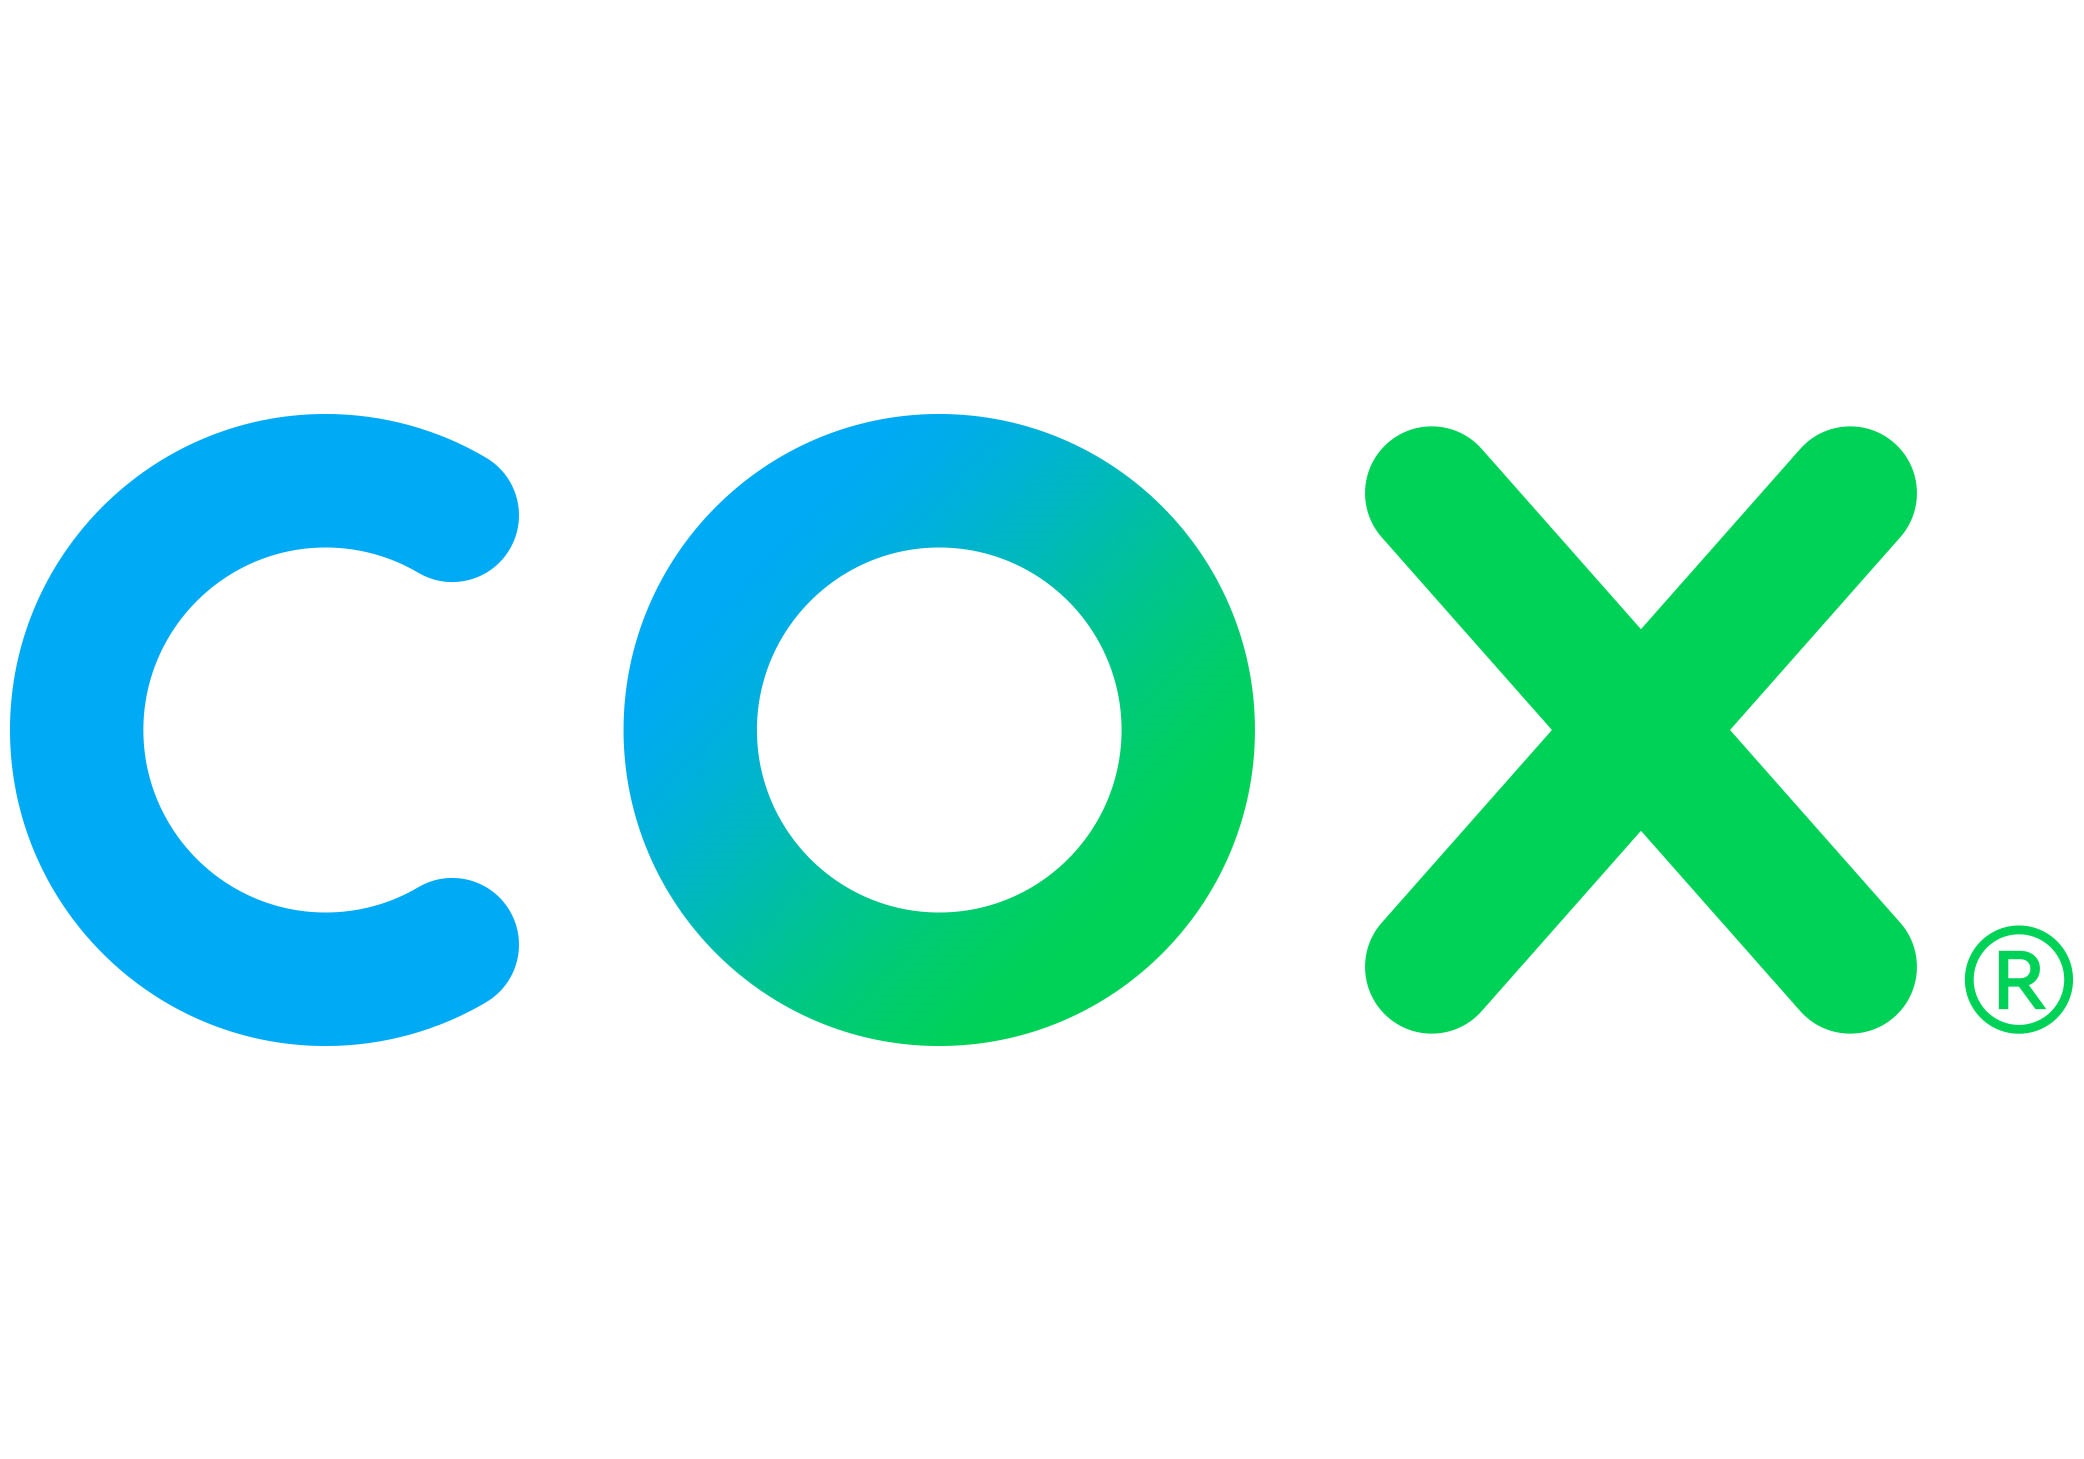 Cox_Communications_Logo